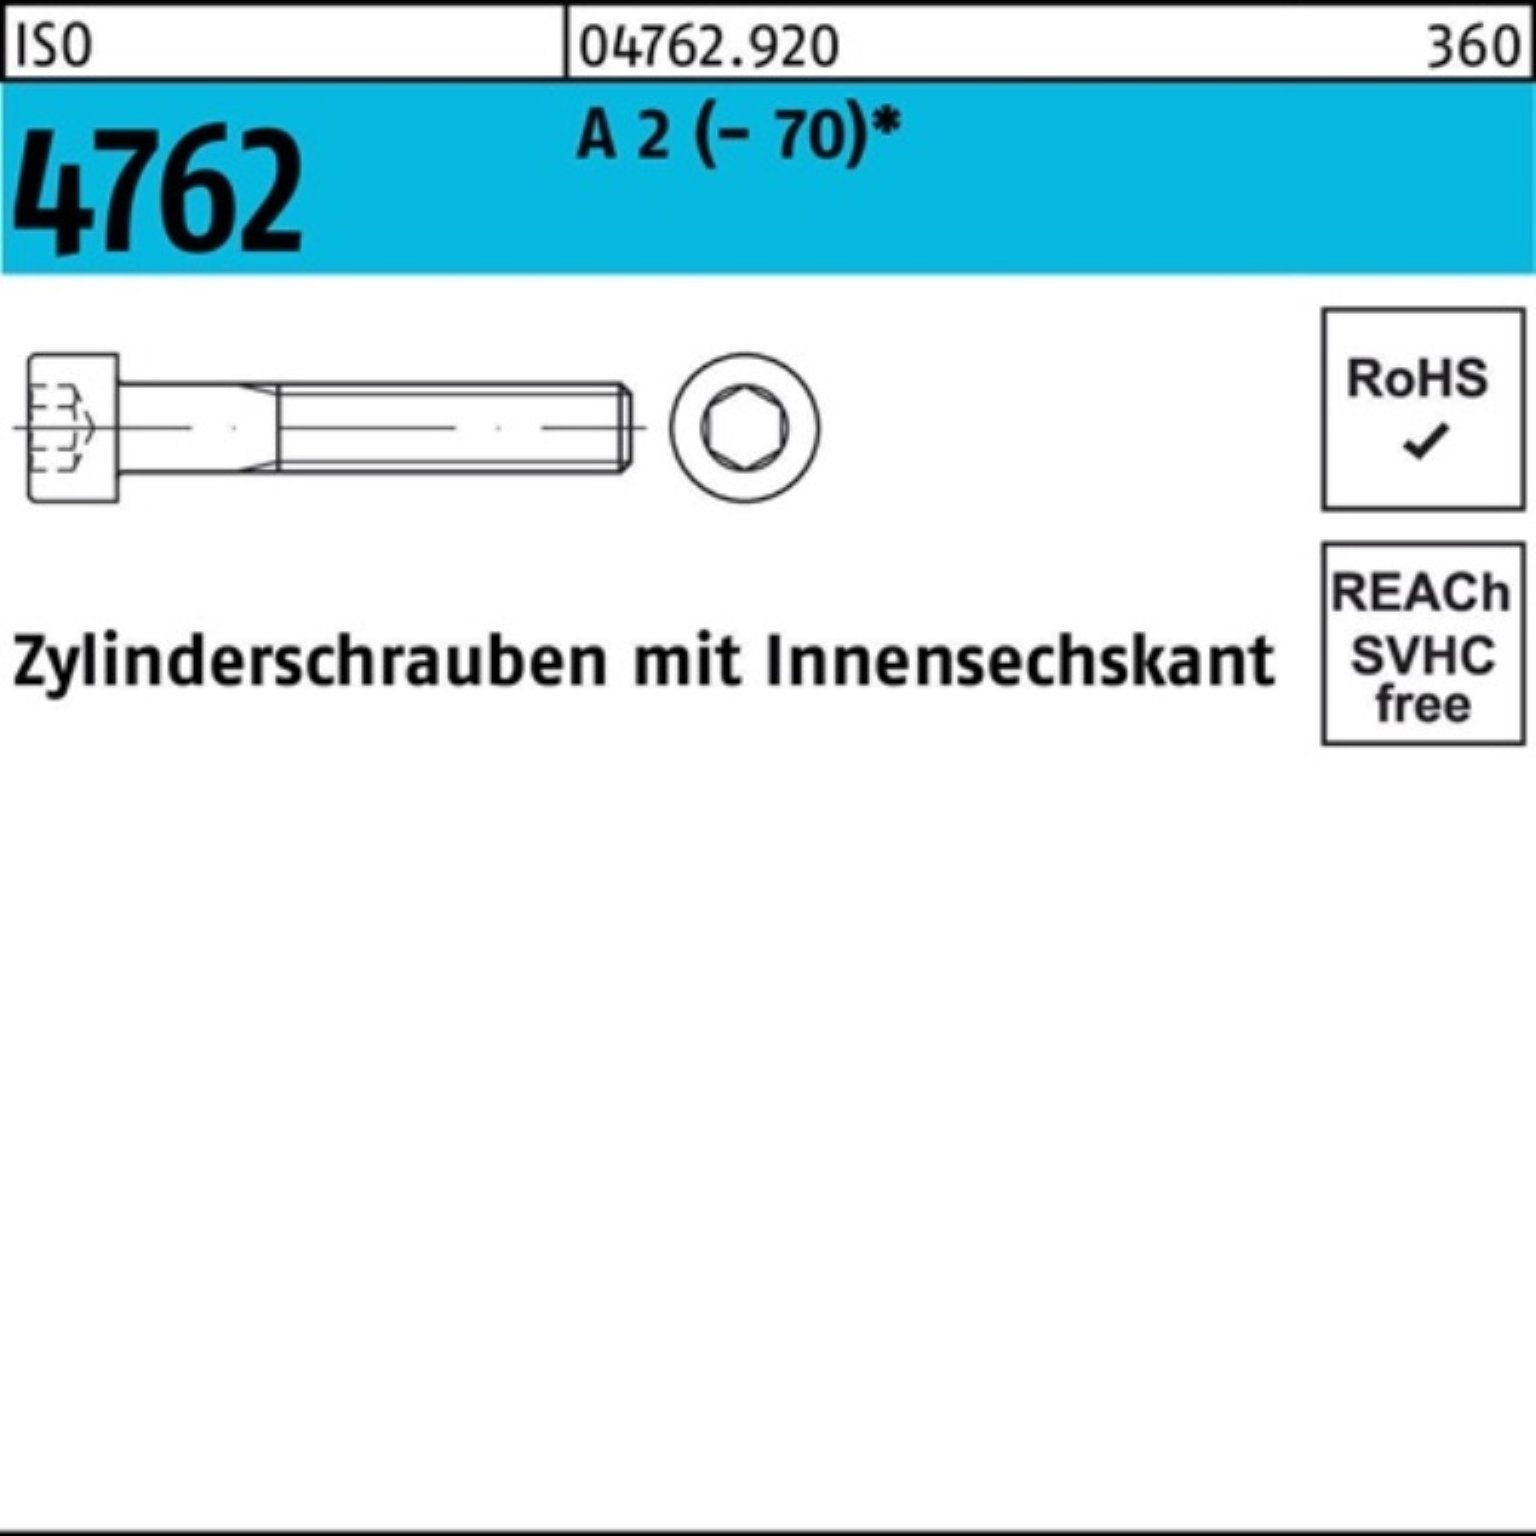 ISO A Pack Zylinderschraube 2 80 St 100er (70) Reyher 1 Innen-6kt 4762 M24x Zylinderschraube